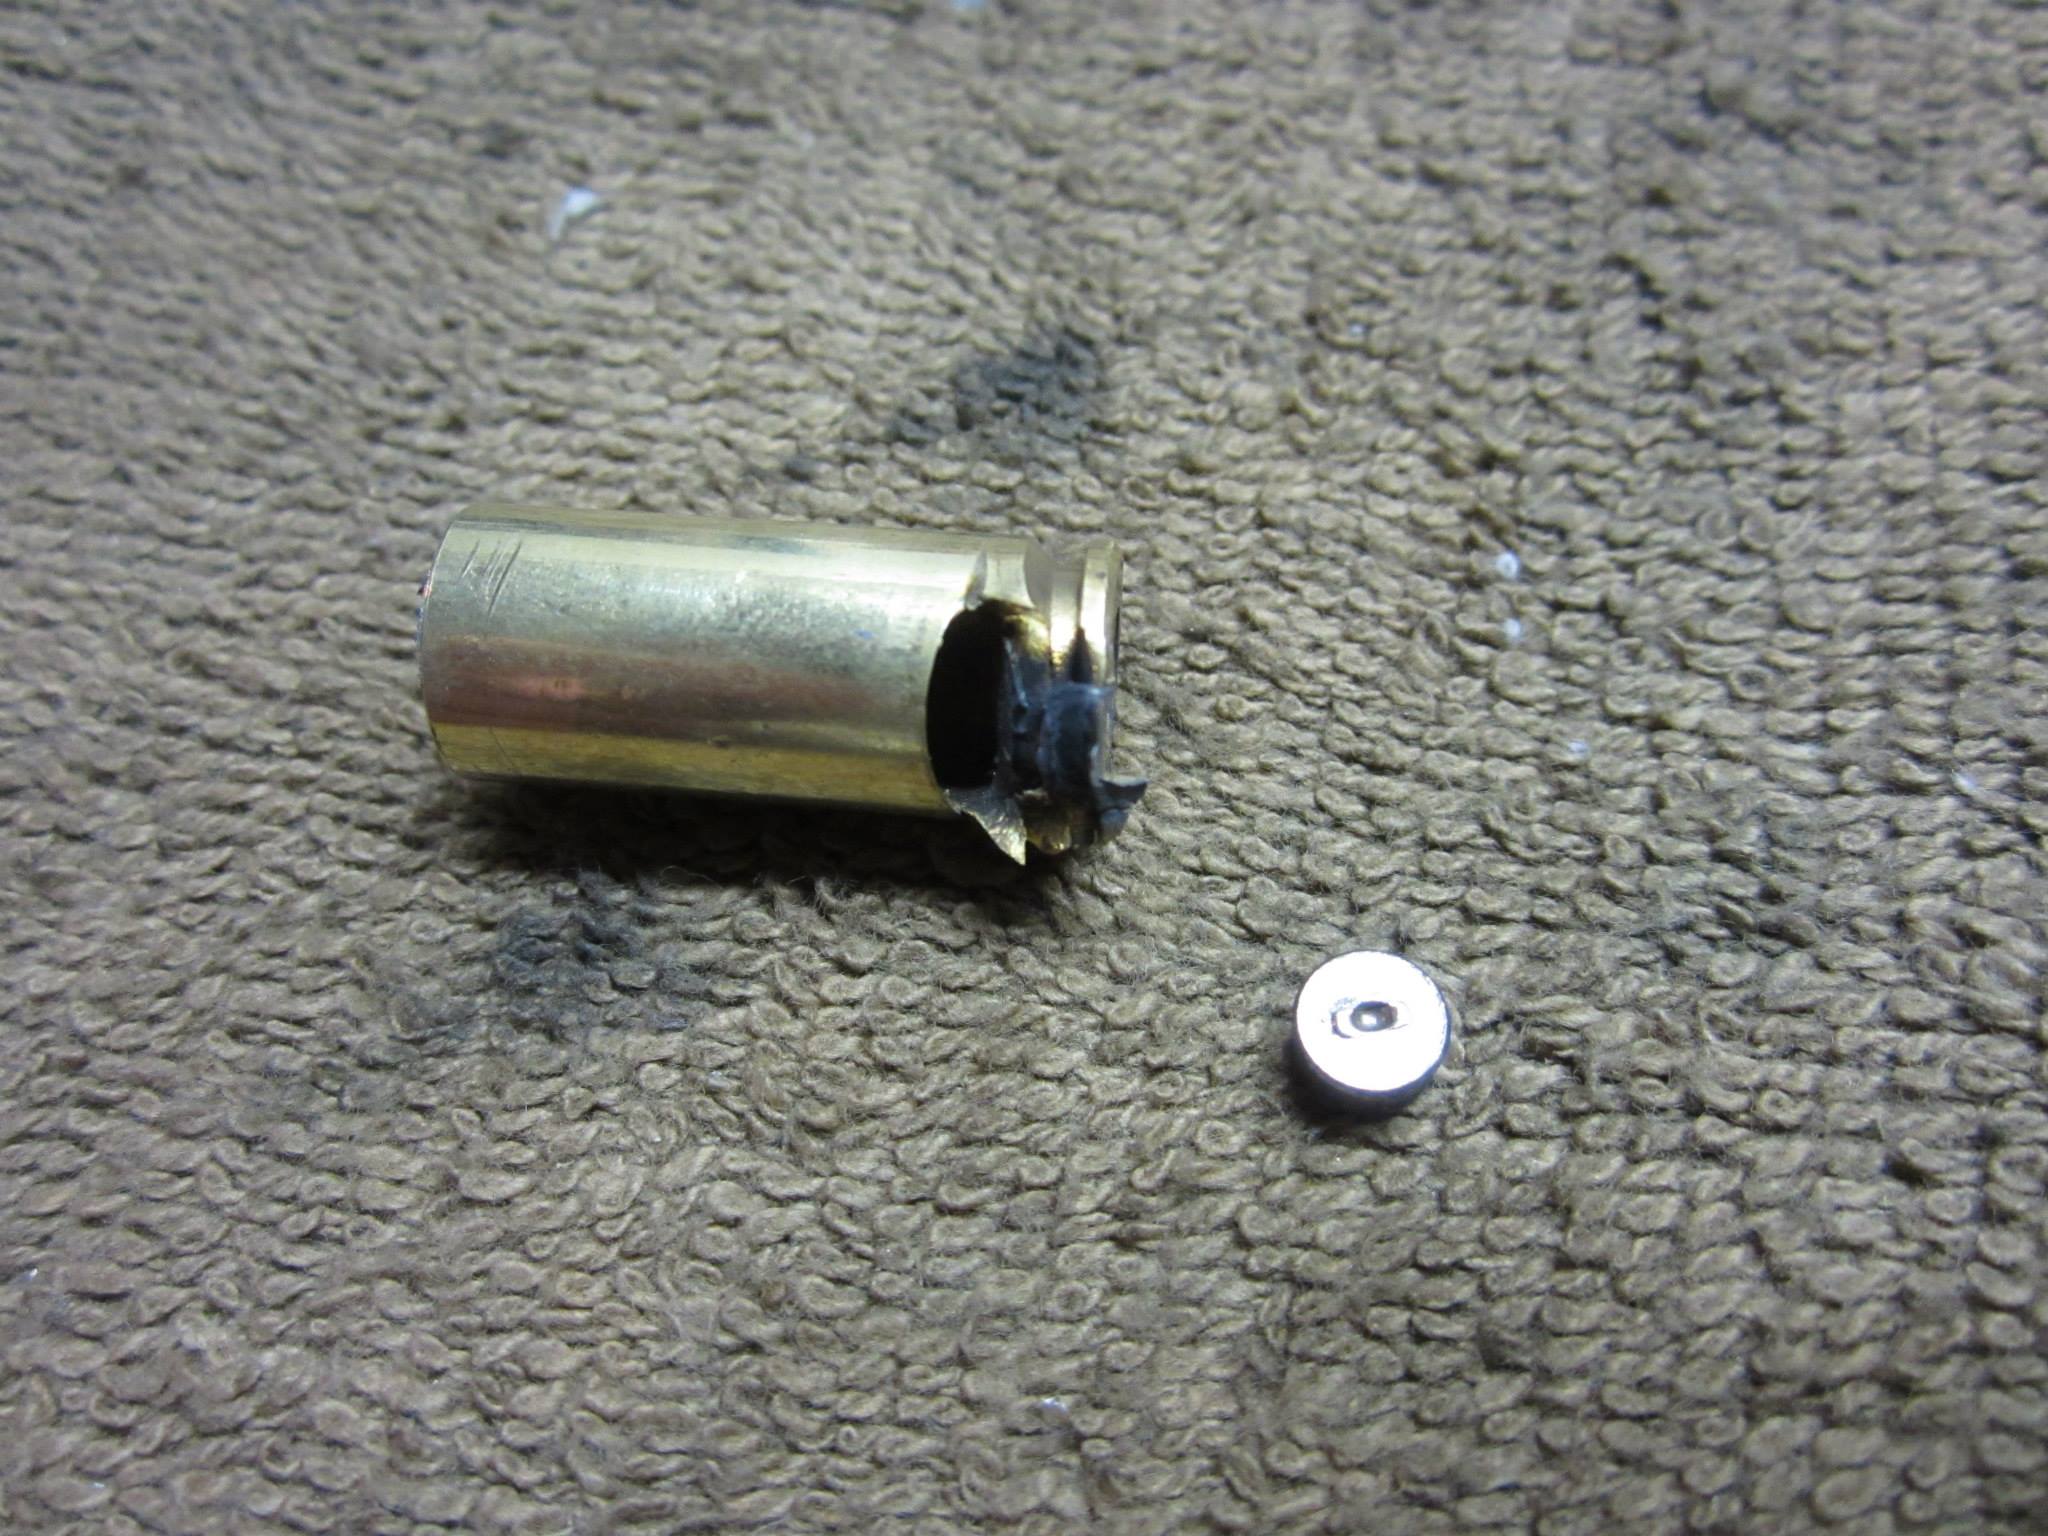 Blown 10mm round in Glock